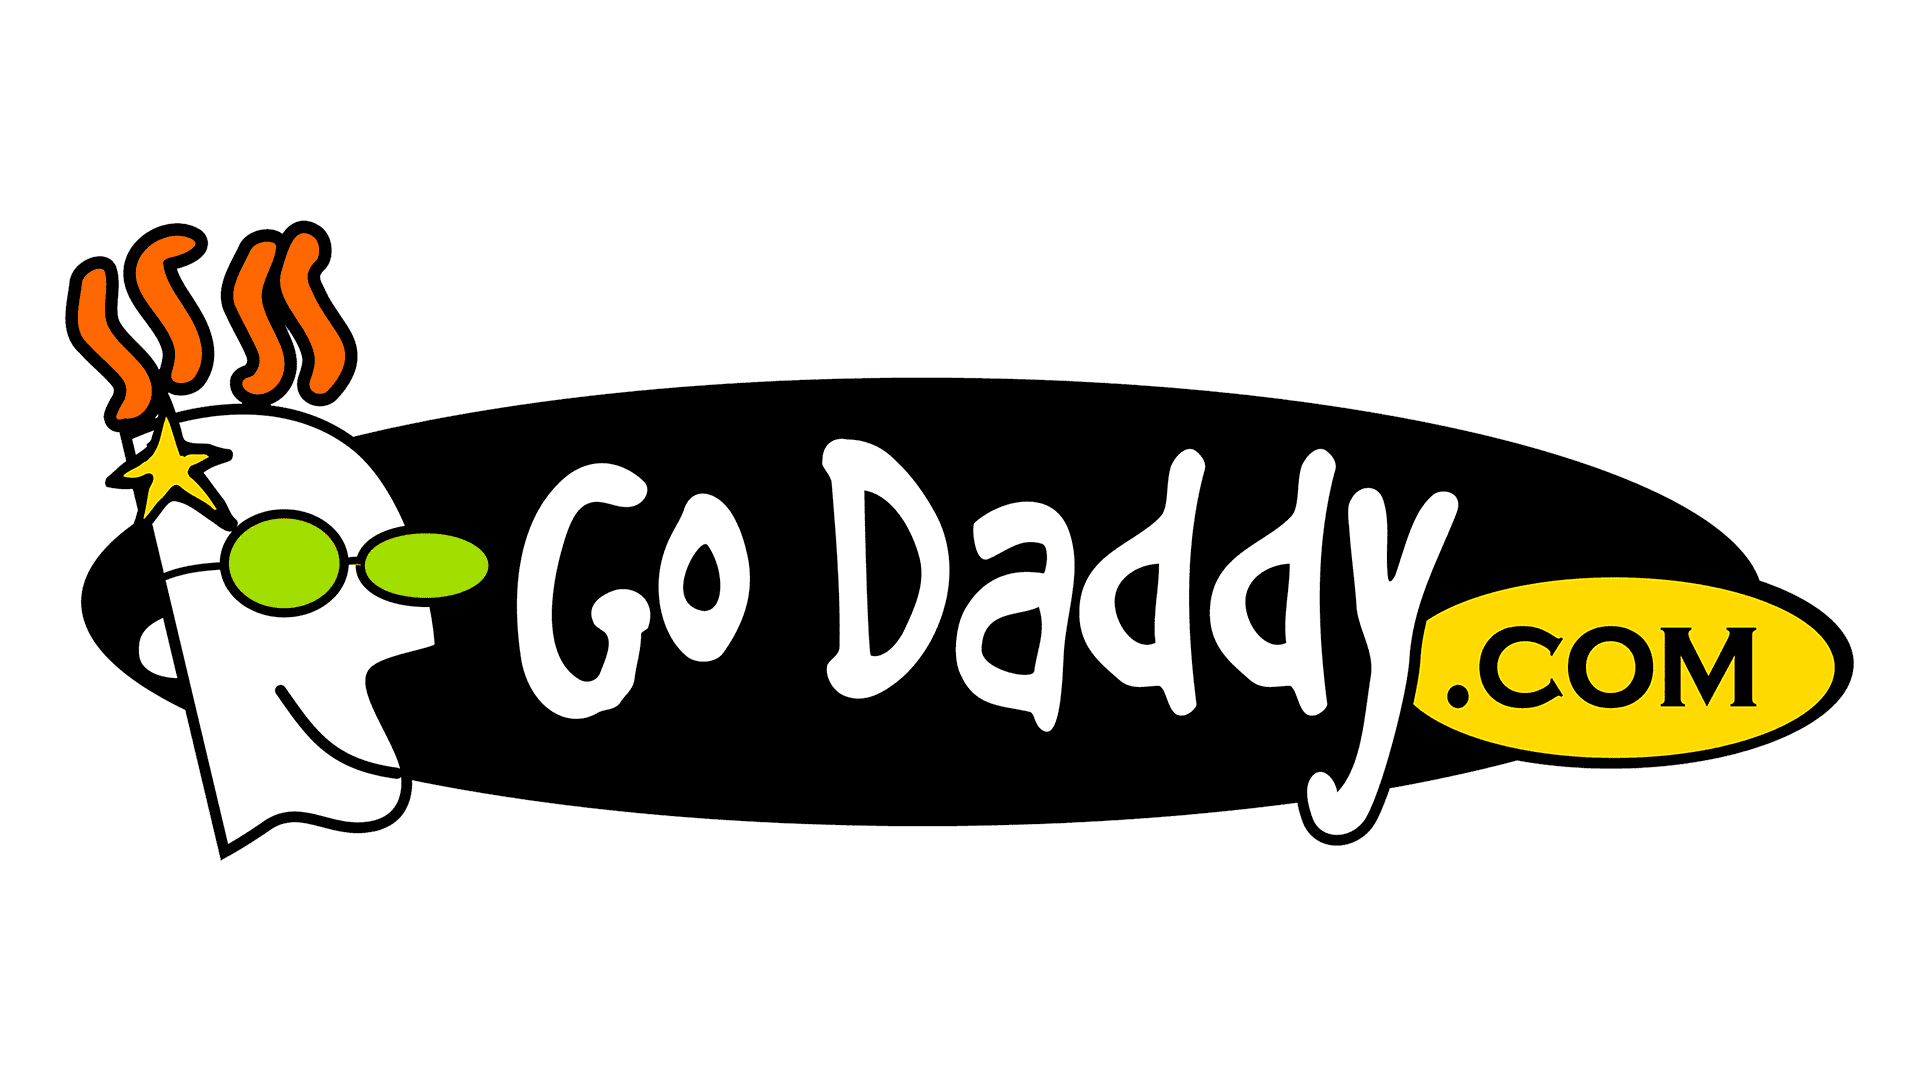 Most daddy. Godaddy. Go Daddy. Daddies.com. Godaddy.com.